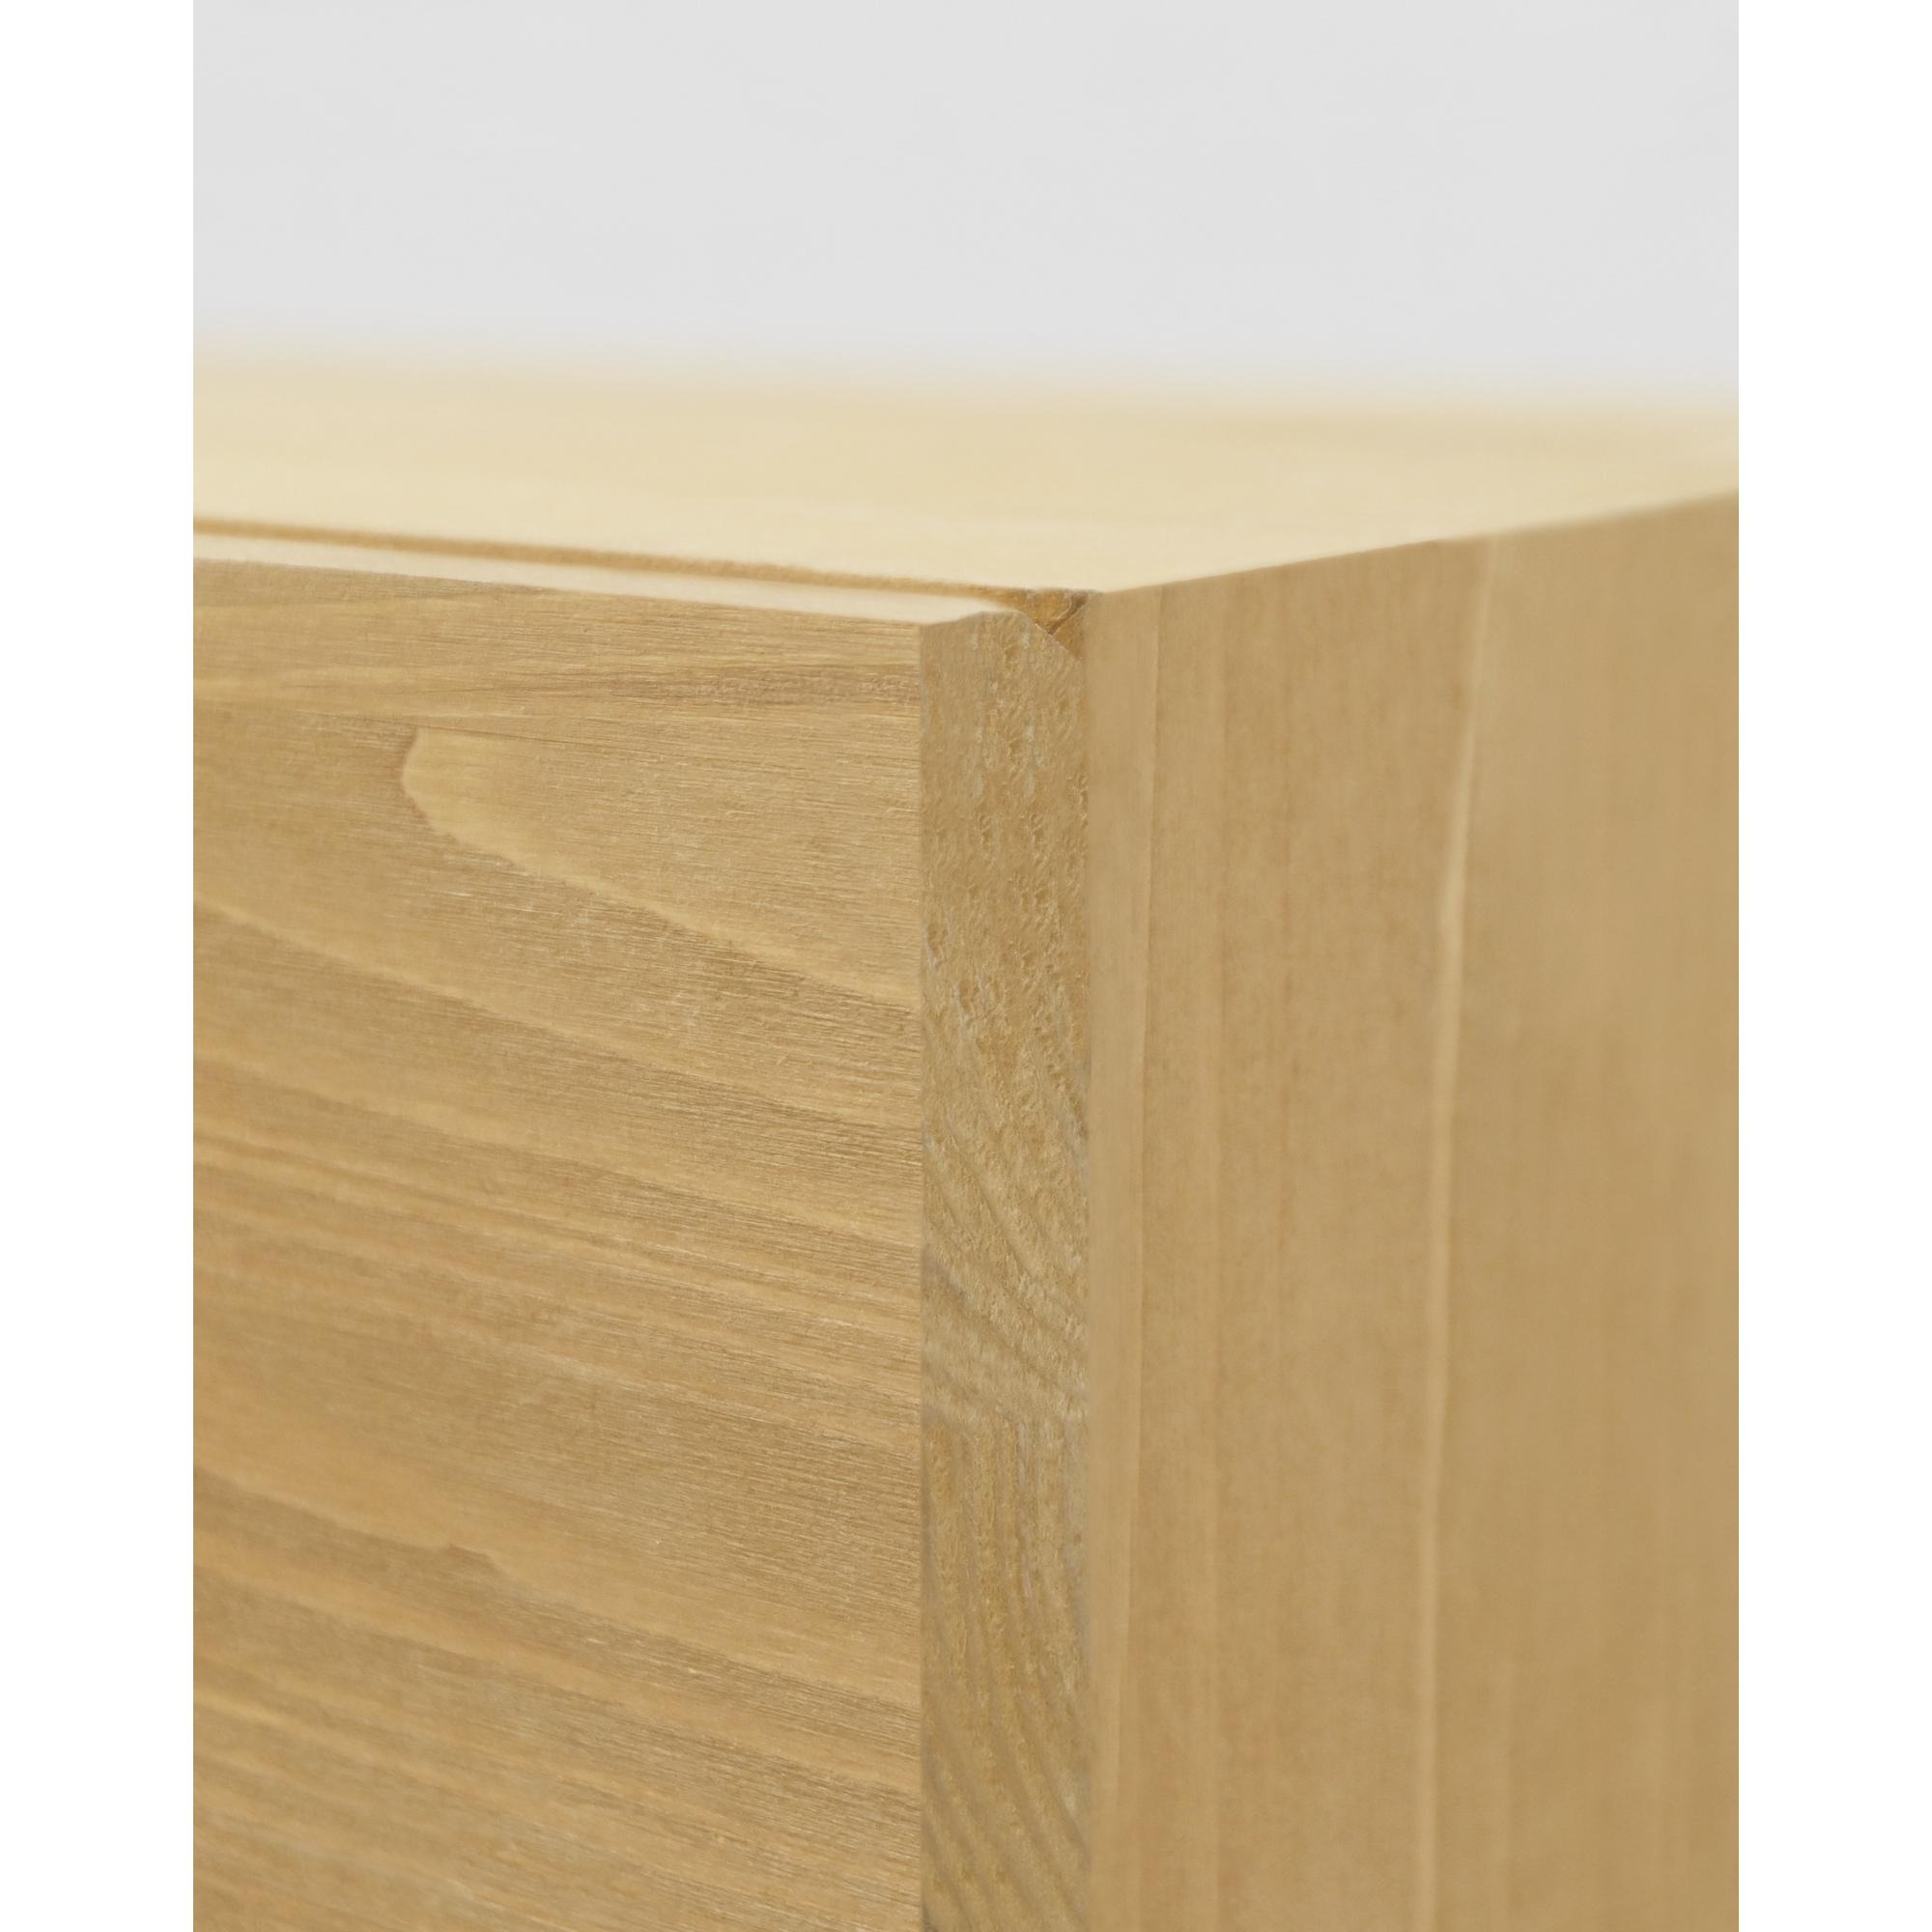 Table de chevet flottante en bois massif avec poignée olive 15x40cm Hauteur: 15 Longueur: 40 Largeur: 25